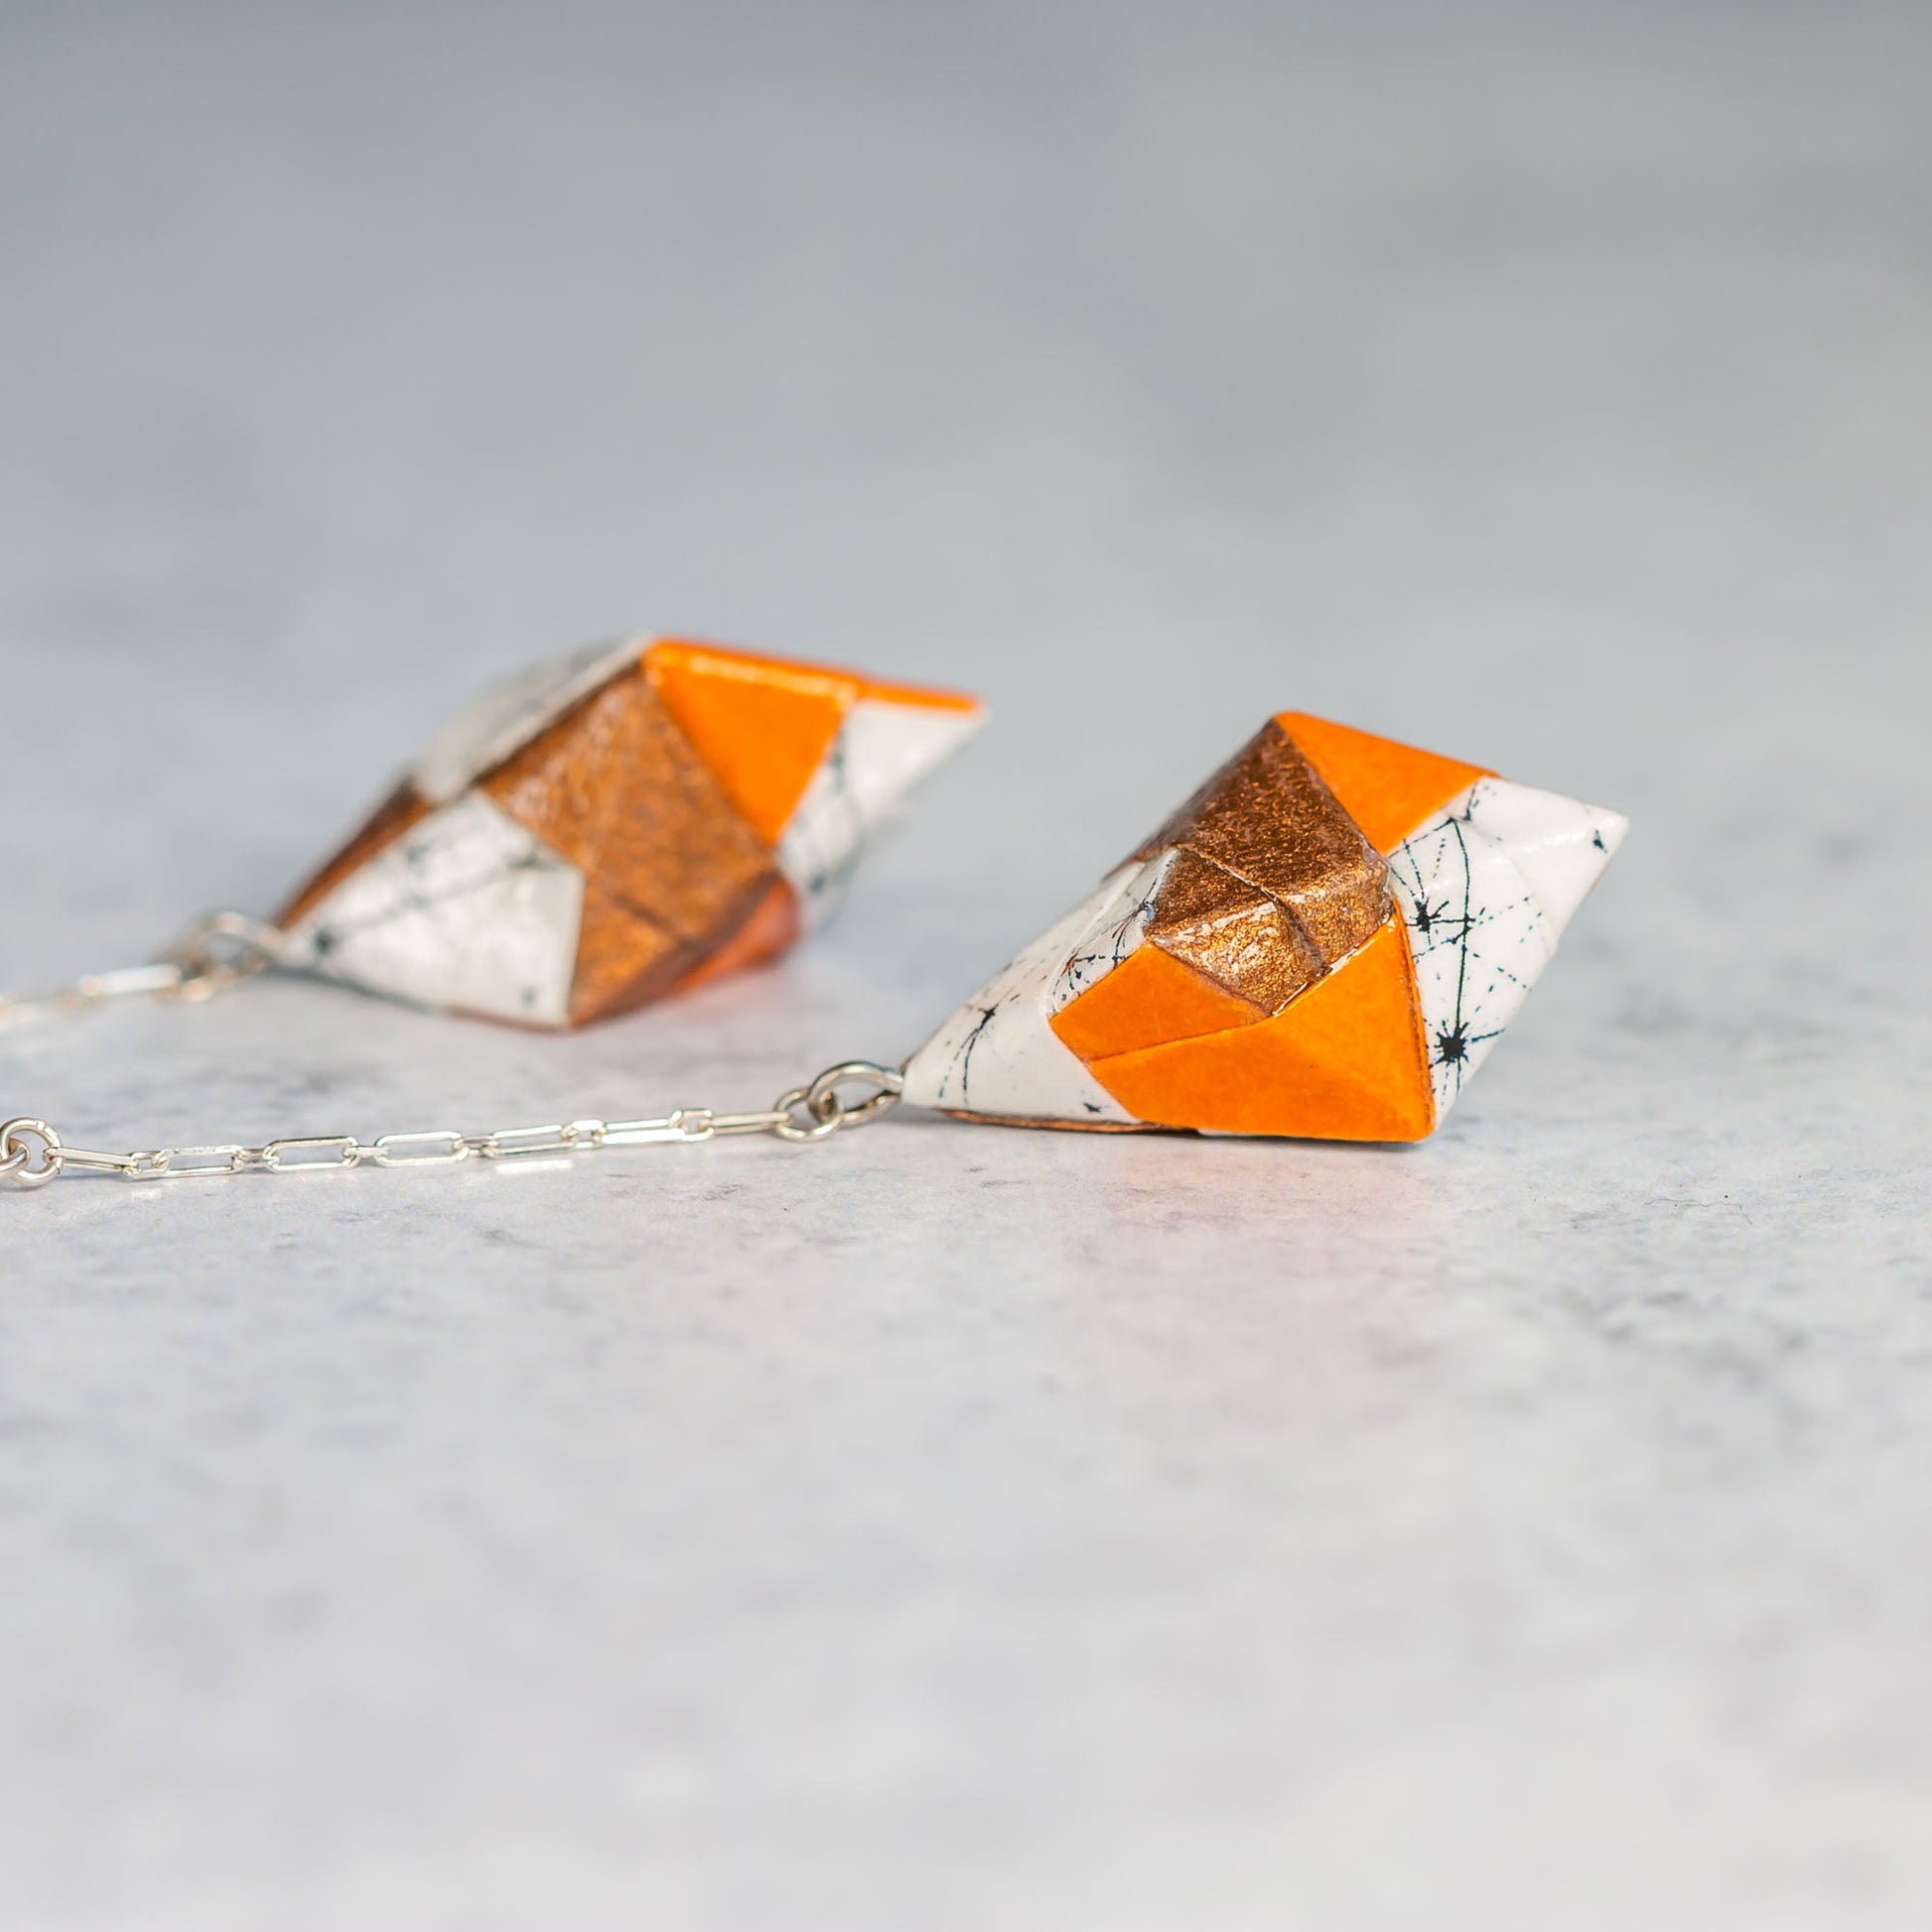 Origami Diamond Paper Earrings - Starburst Copper Orange - By LeeMo Designs in Bend, Oregon